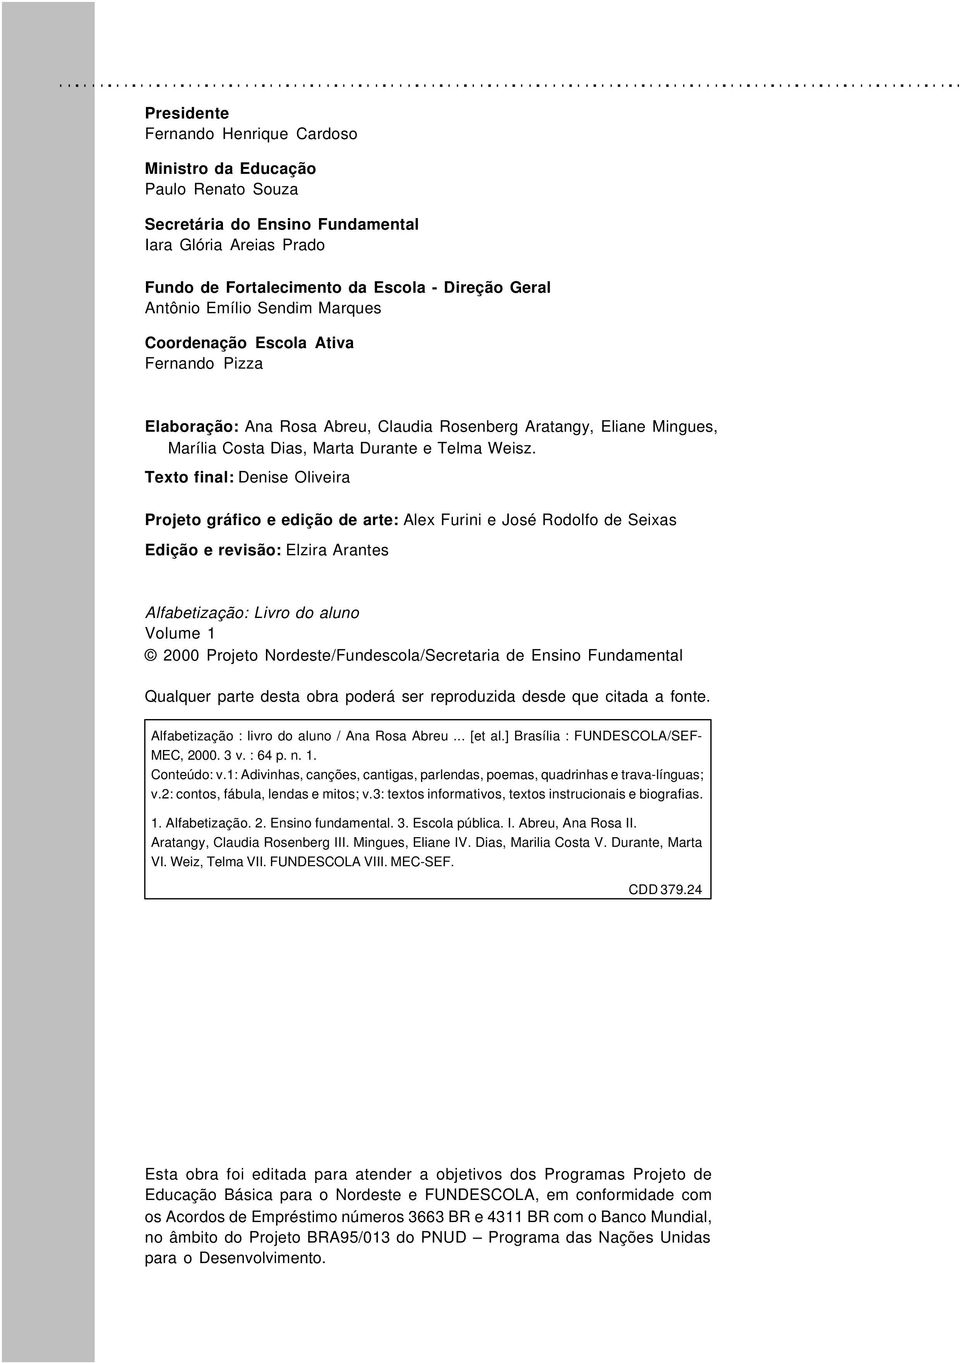 Texto final: Denise Oliveira Projeto gráfico e edição de arte: Alex Furini e José Rodolfo de Seixas Edição e revisão: Elzira Arantes Alfabetização: Livro do aluno Volume 1 2000 Projeto